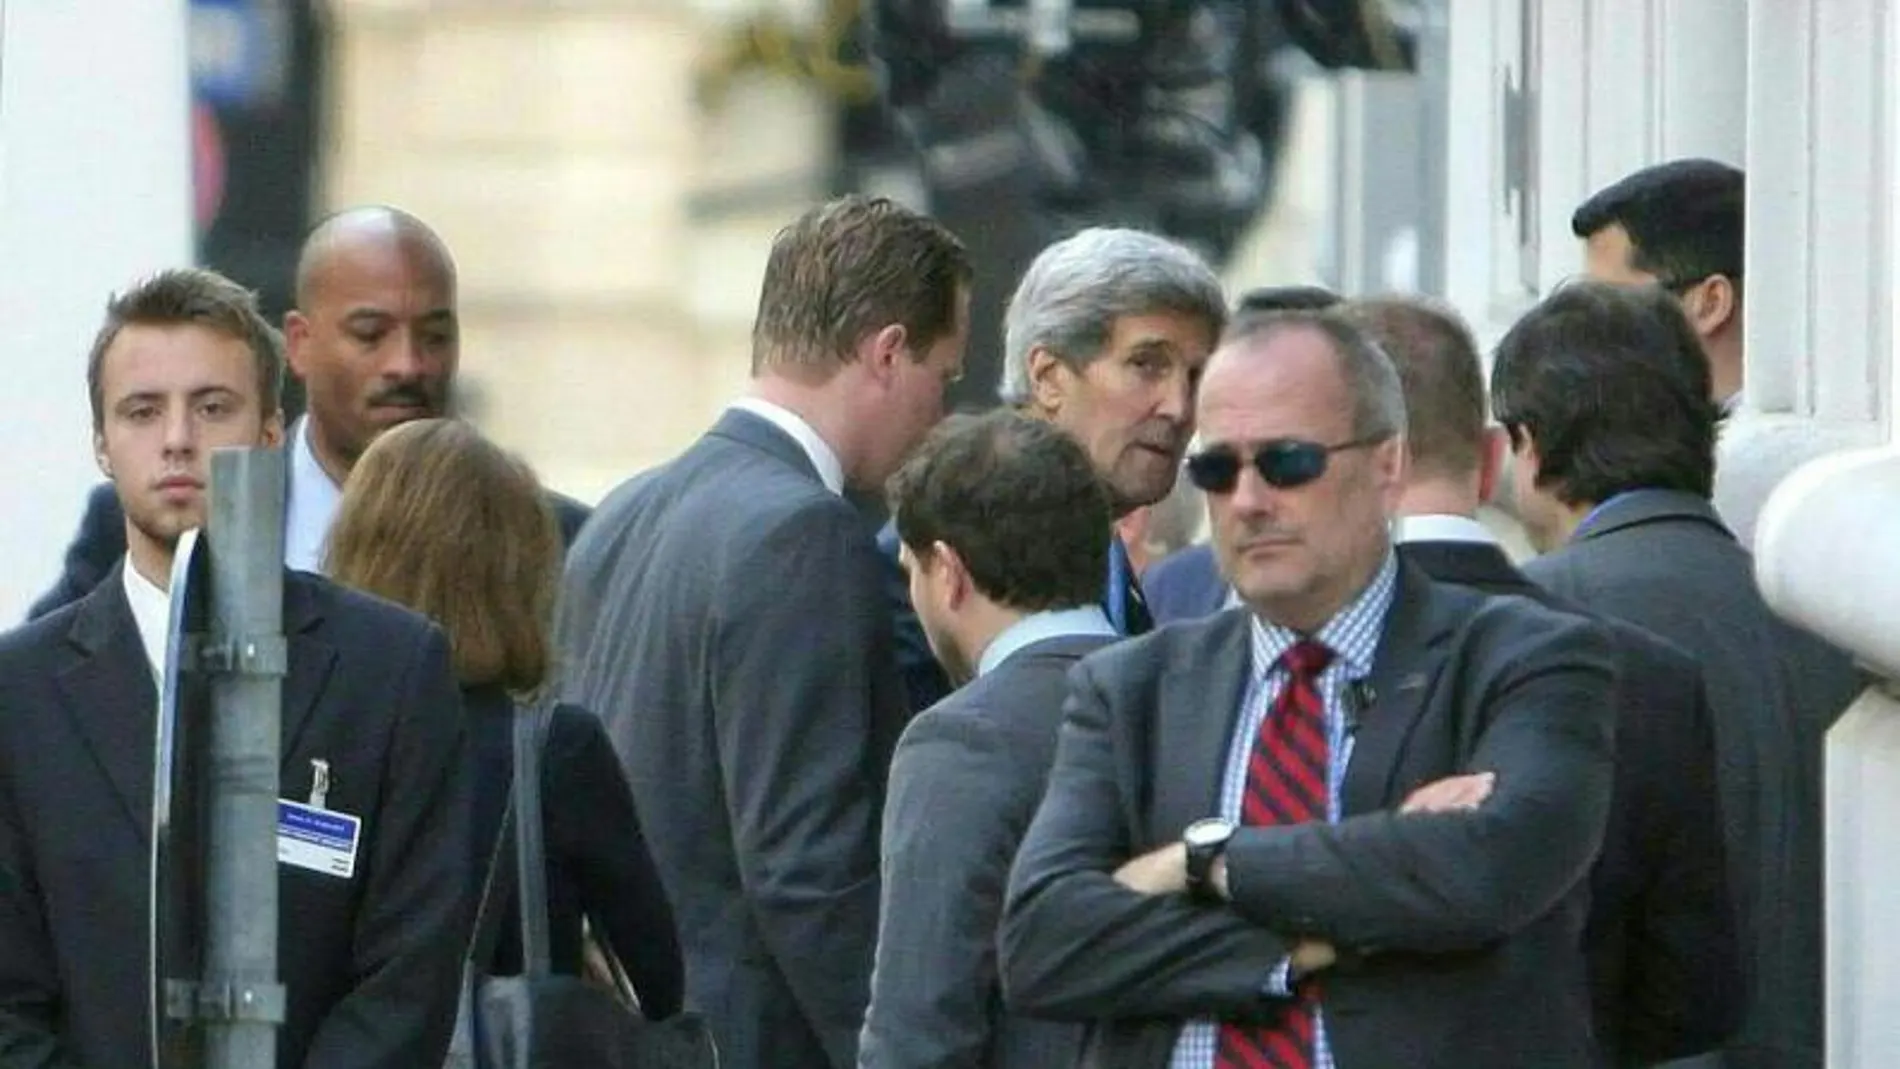 El secretario de Estado de EE. UU., John Kerry (c, al fondo), a su llegada a la reunión entre Irán y los países del Grupo 5+1 (EE.UU., Francia, Rusia, Reino Unido, China y Alemania) en Viena